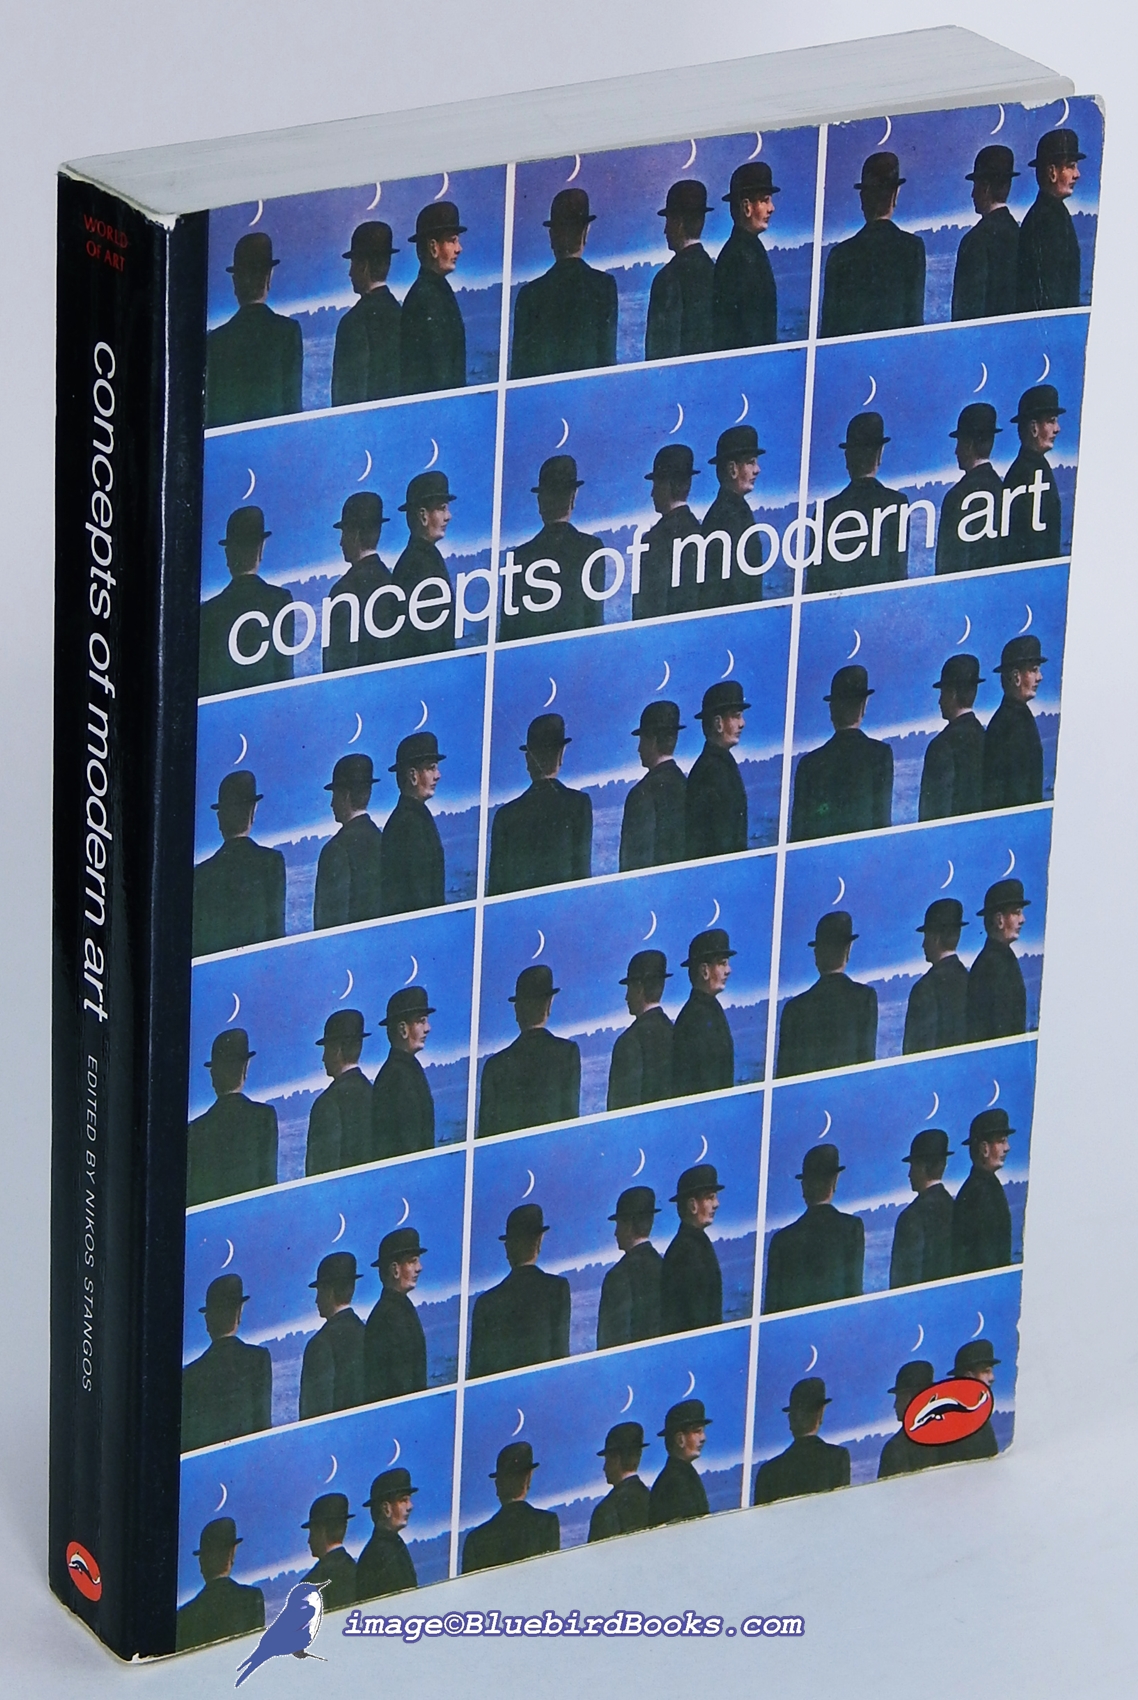 STANGOS, NIKOS (EDITOR) - Concepts of Modern Art